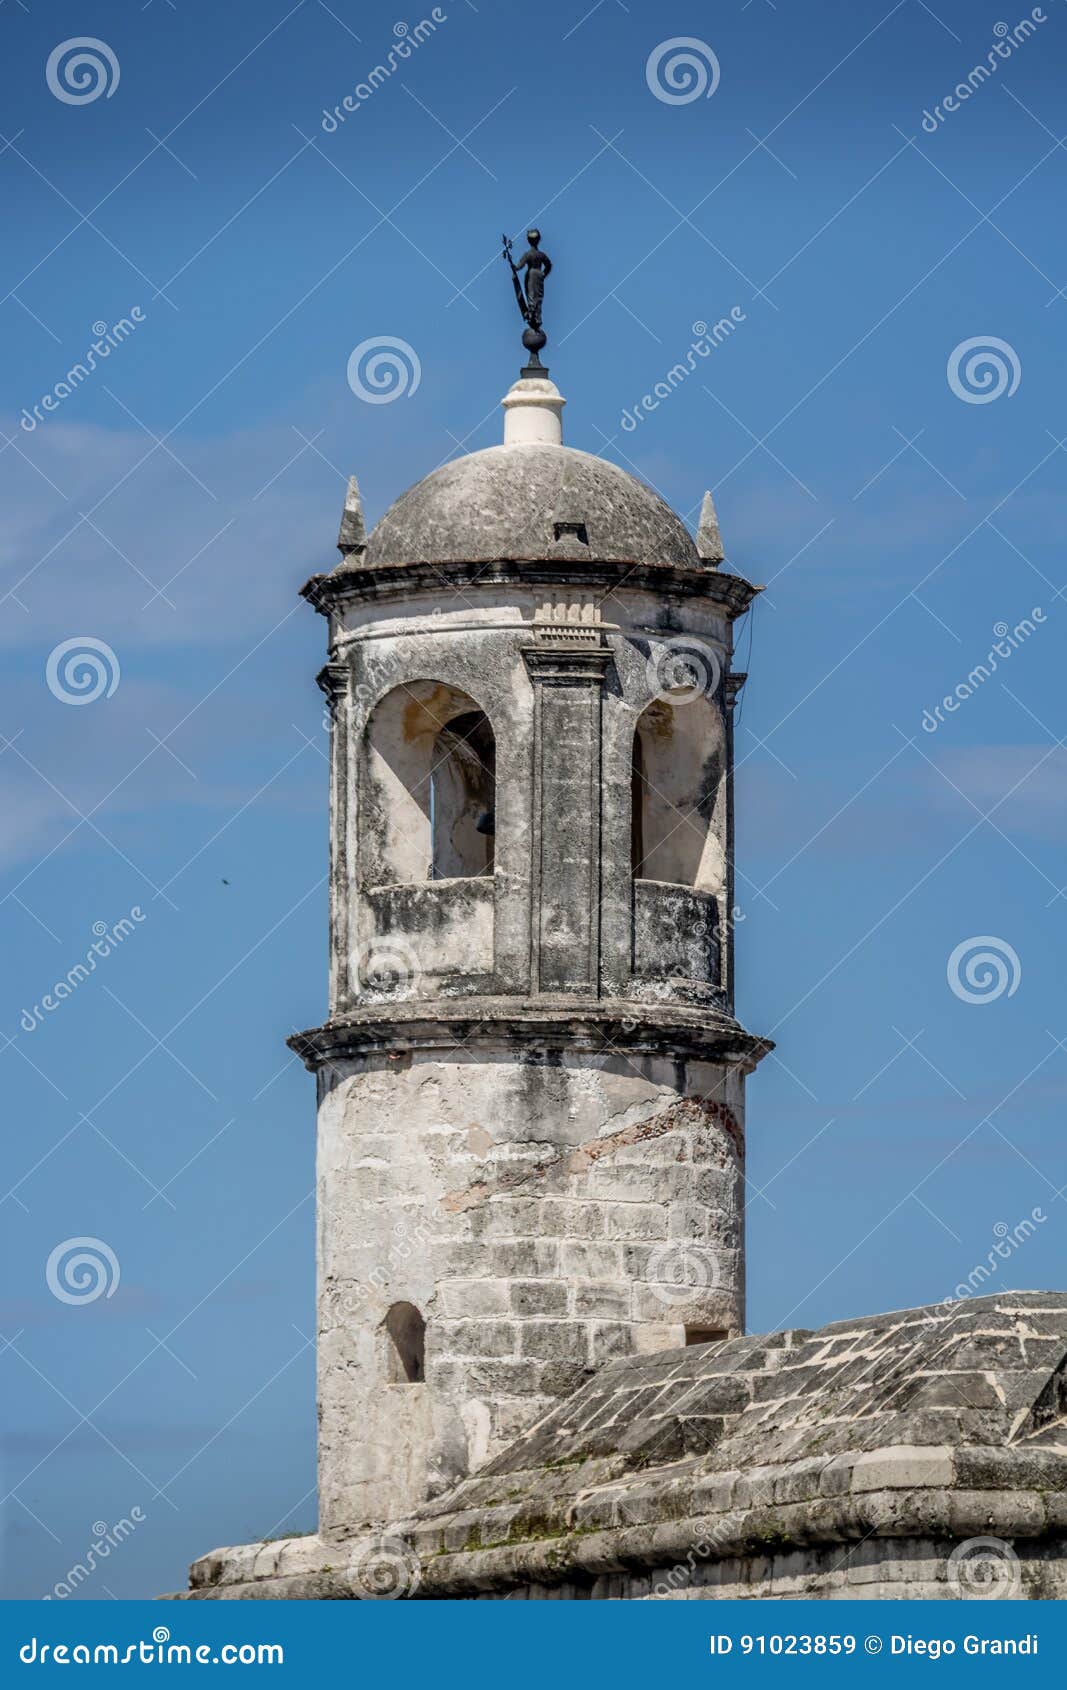 la giraldilla, watchtower of castillo de la real fuerza - havana, cuba